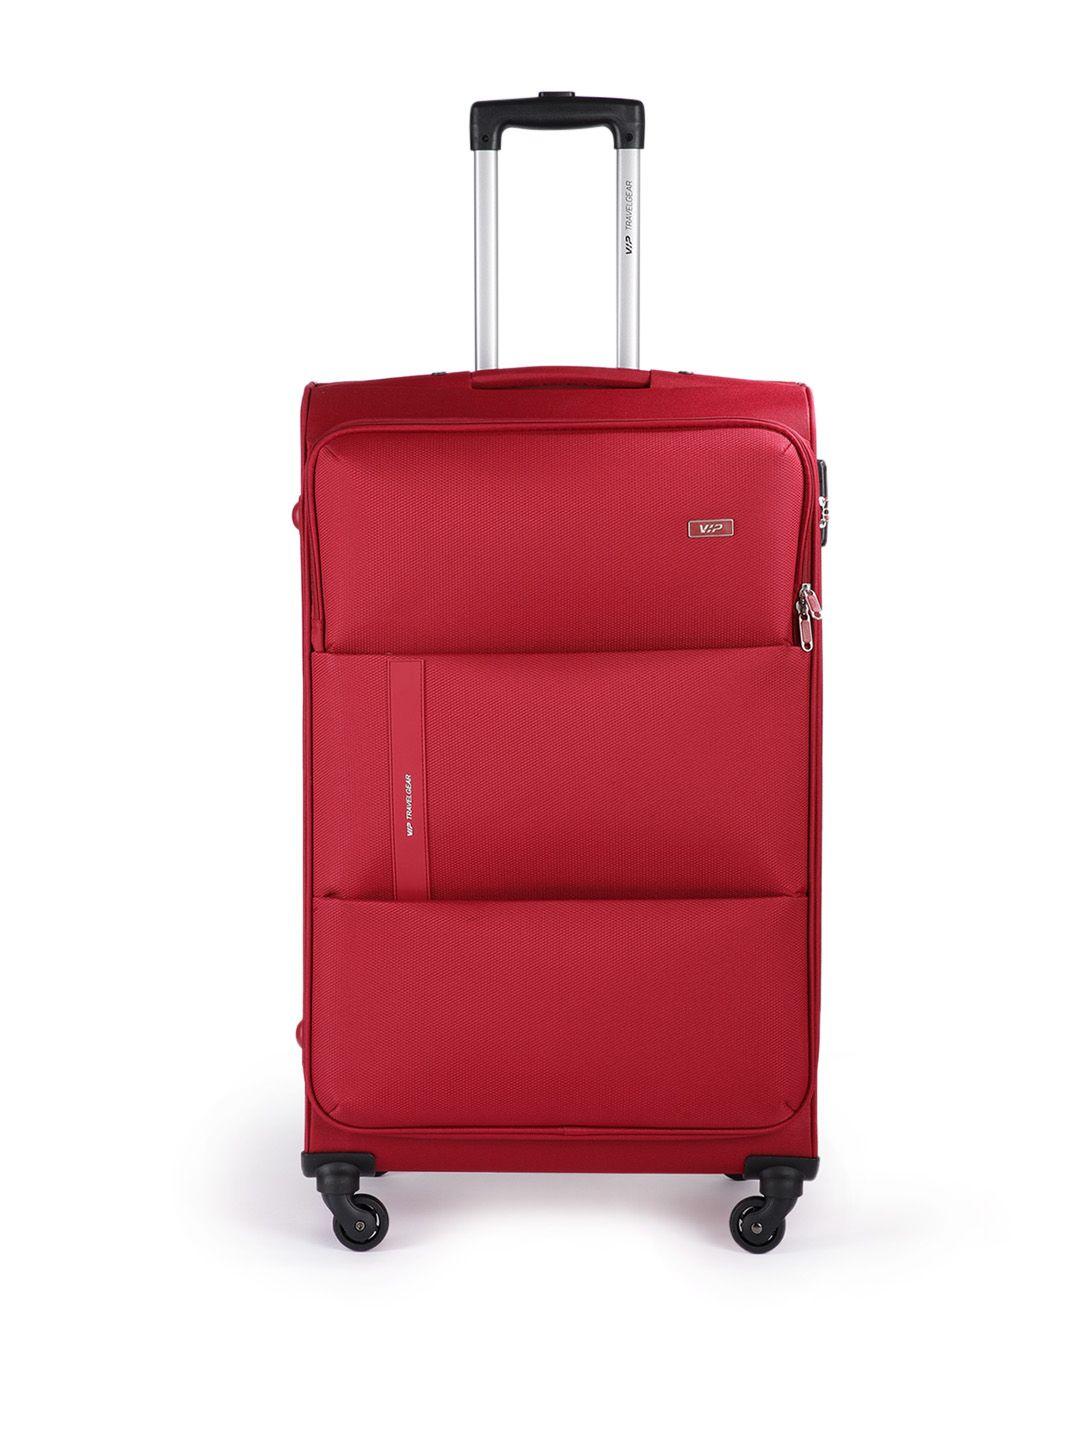 vip red cabin widget str trolley suitcase